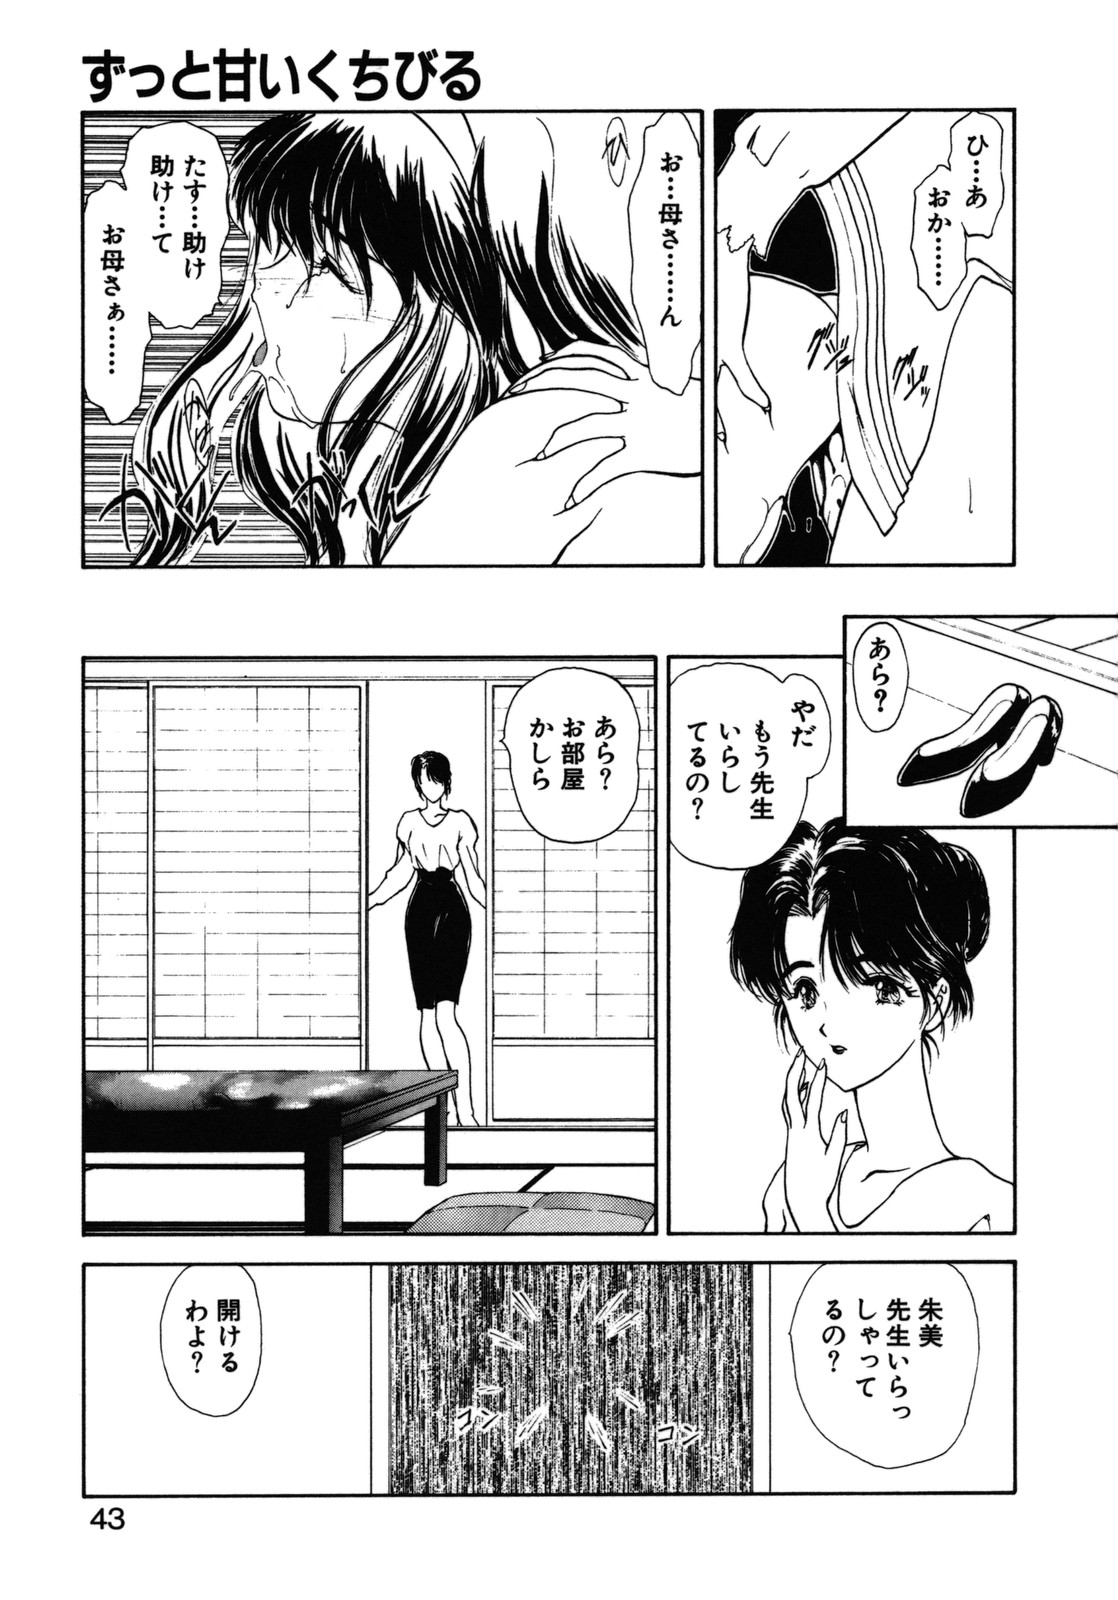 [Utatane Hiroyuki] COUNT DOWN page 44 full